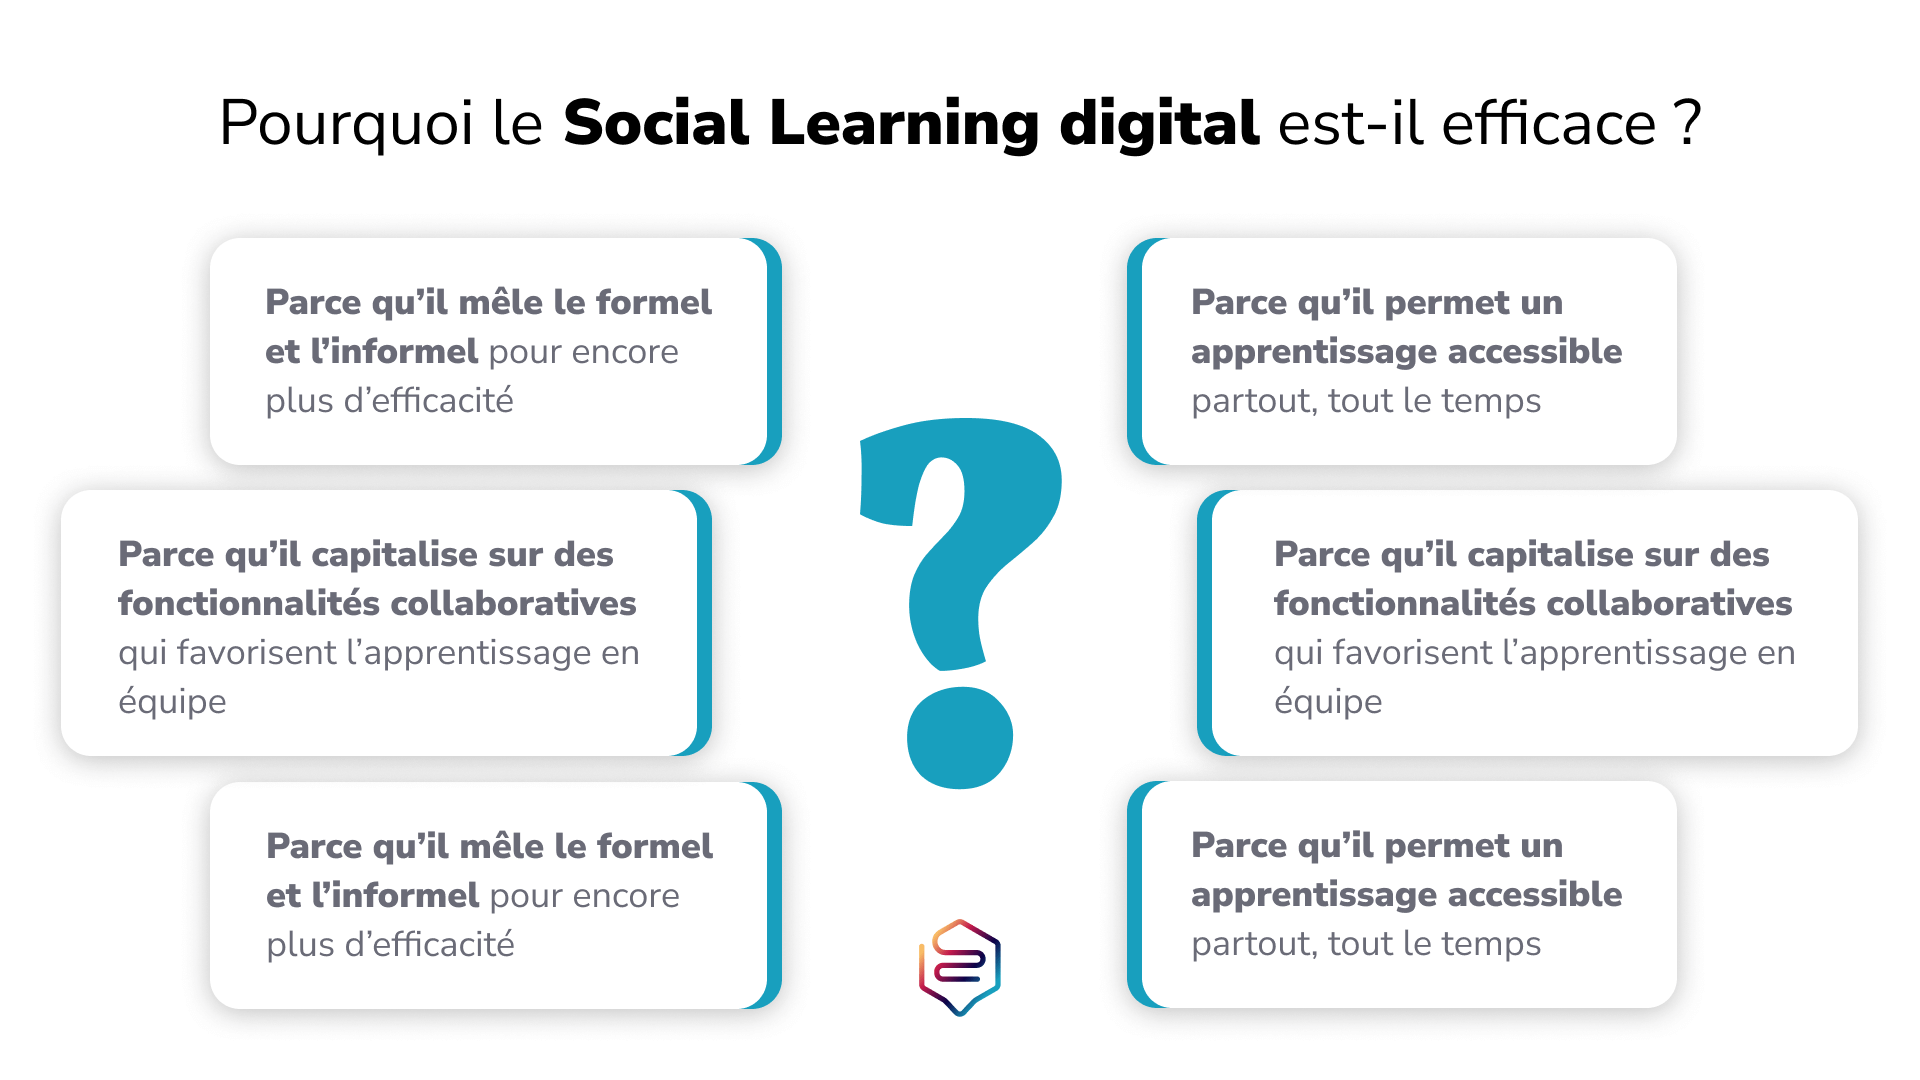 Pourquoi le social learning digital est efficace